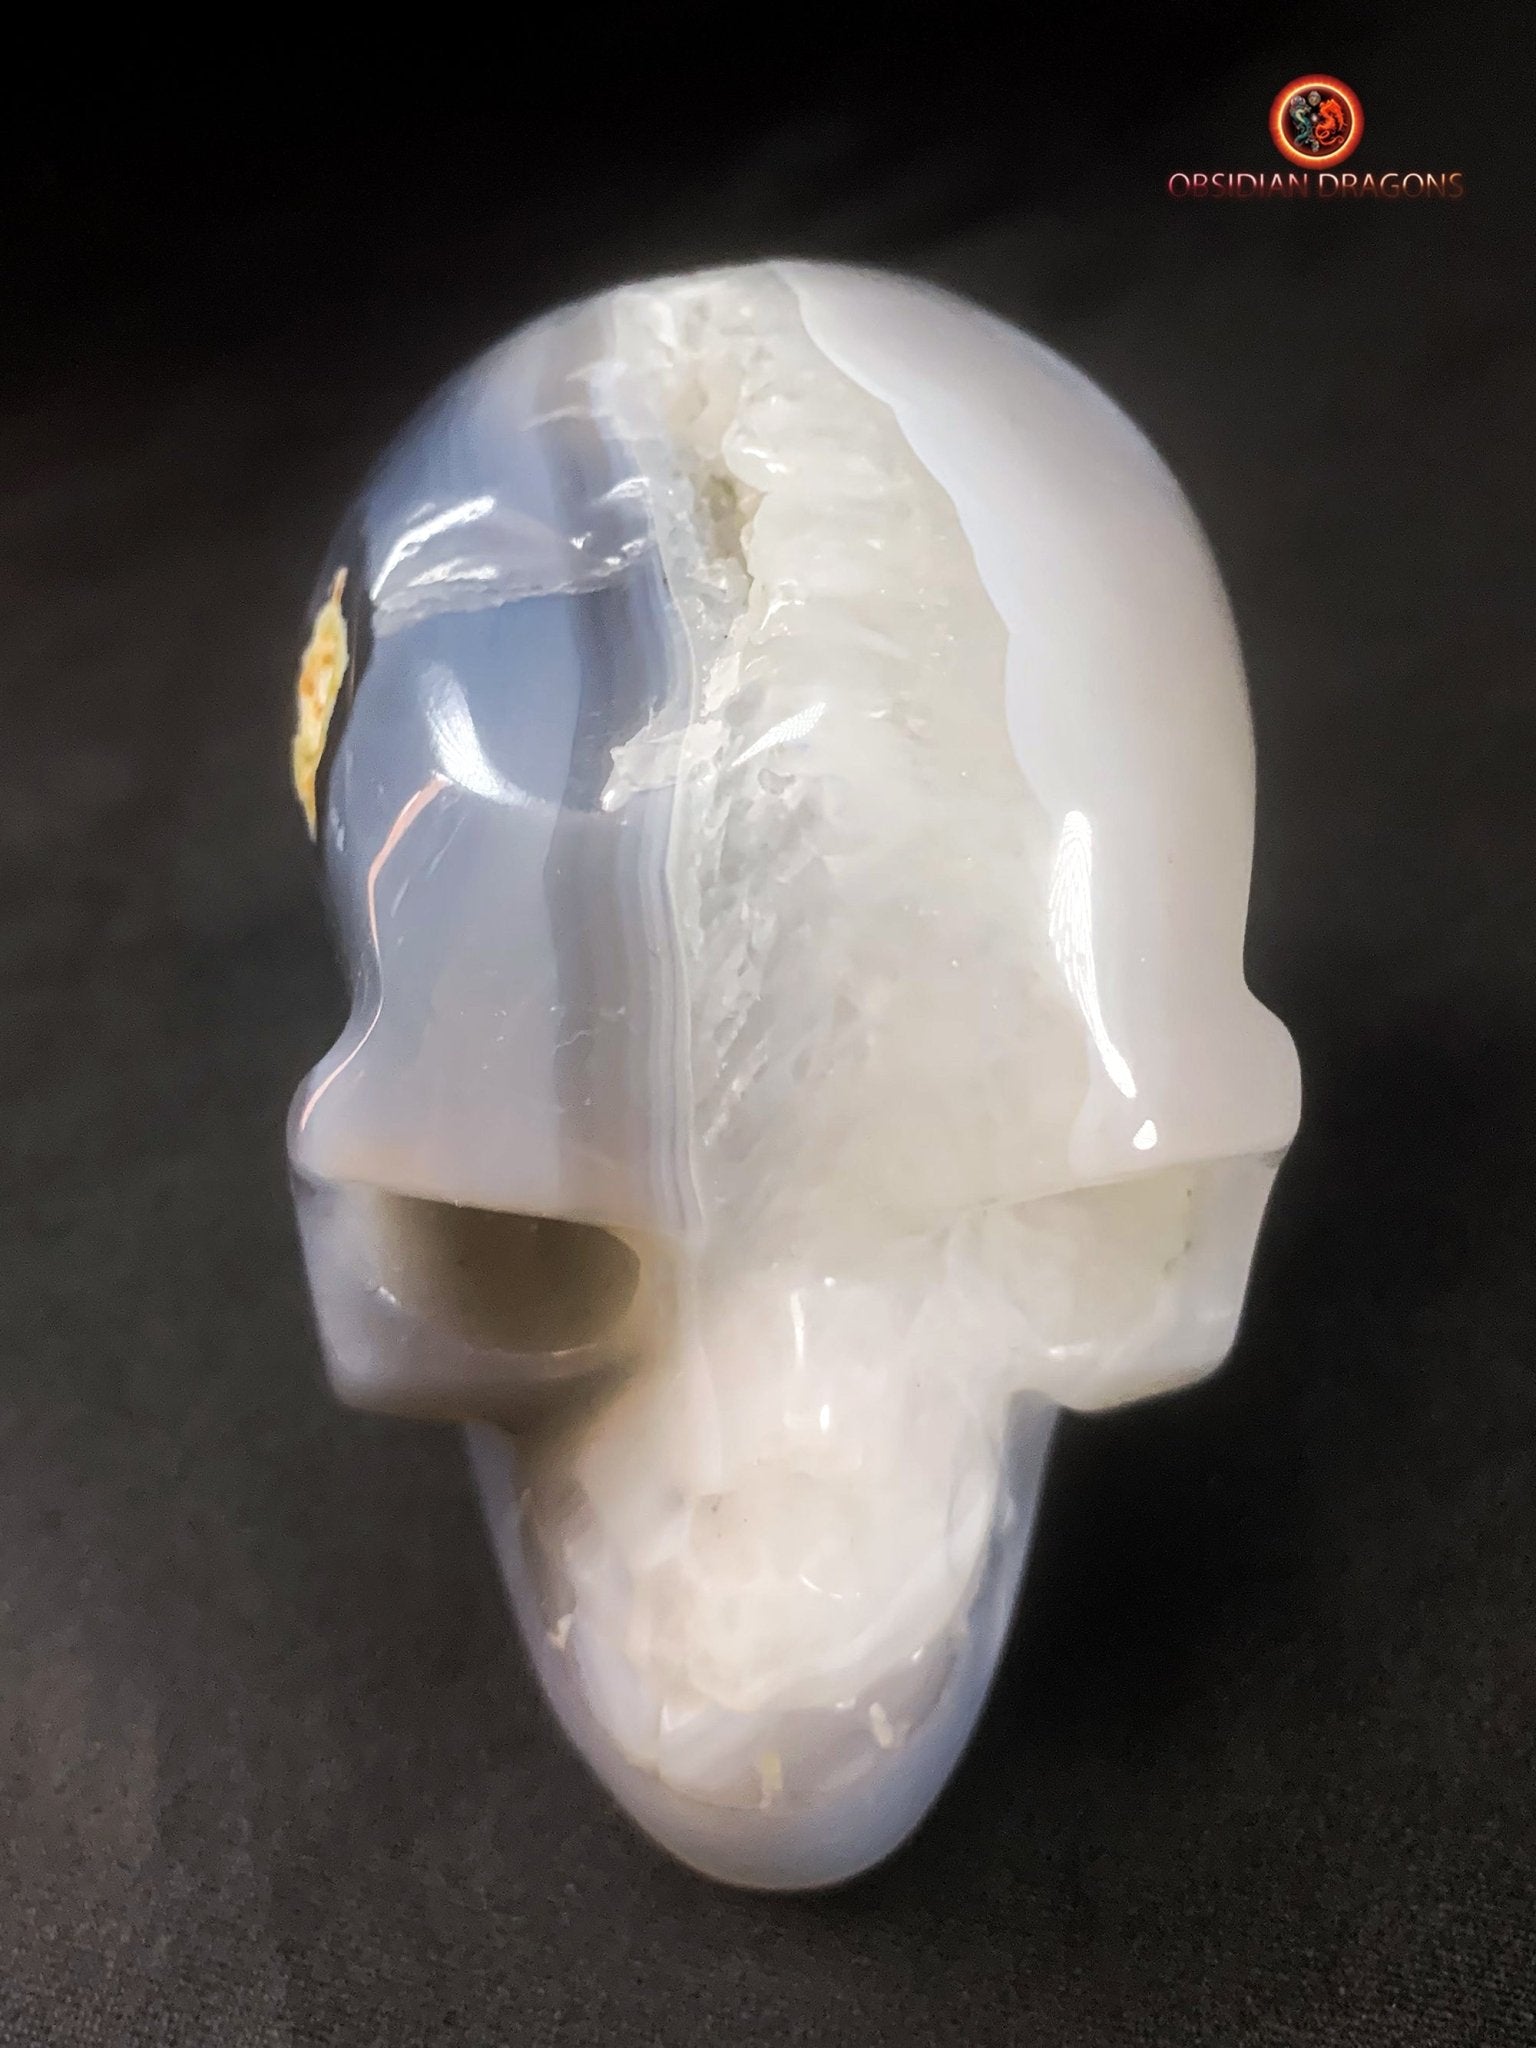 Crâne de cristal artisanal- Quartz- Unique | obsidian dragons